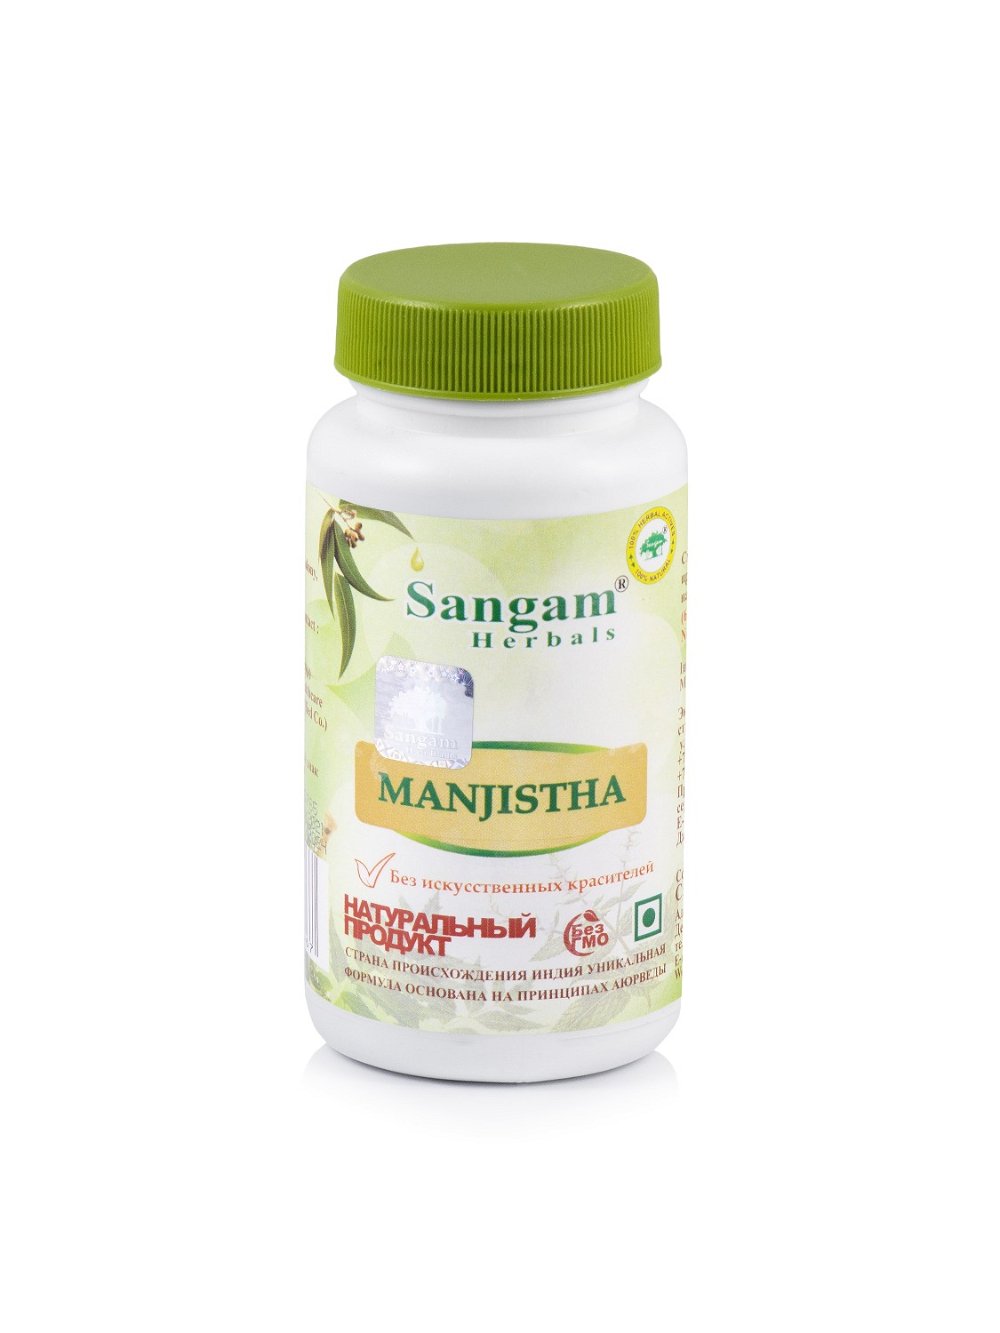 Манжиста Sangam Herbals (60 таблеток), Манжиста